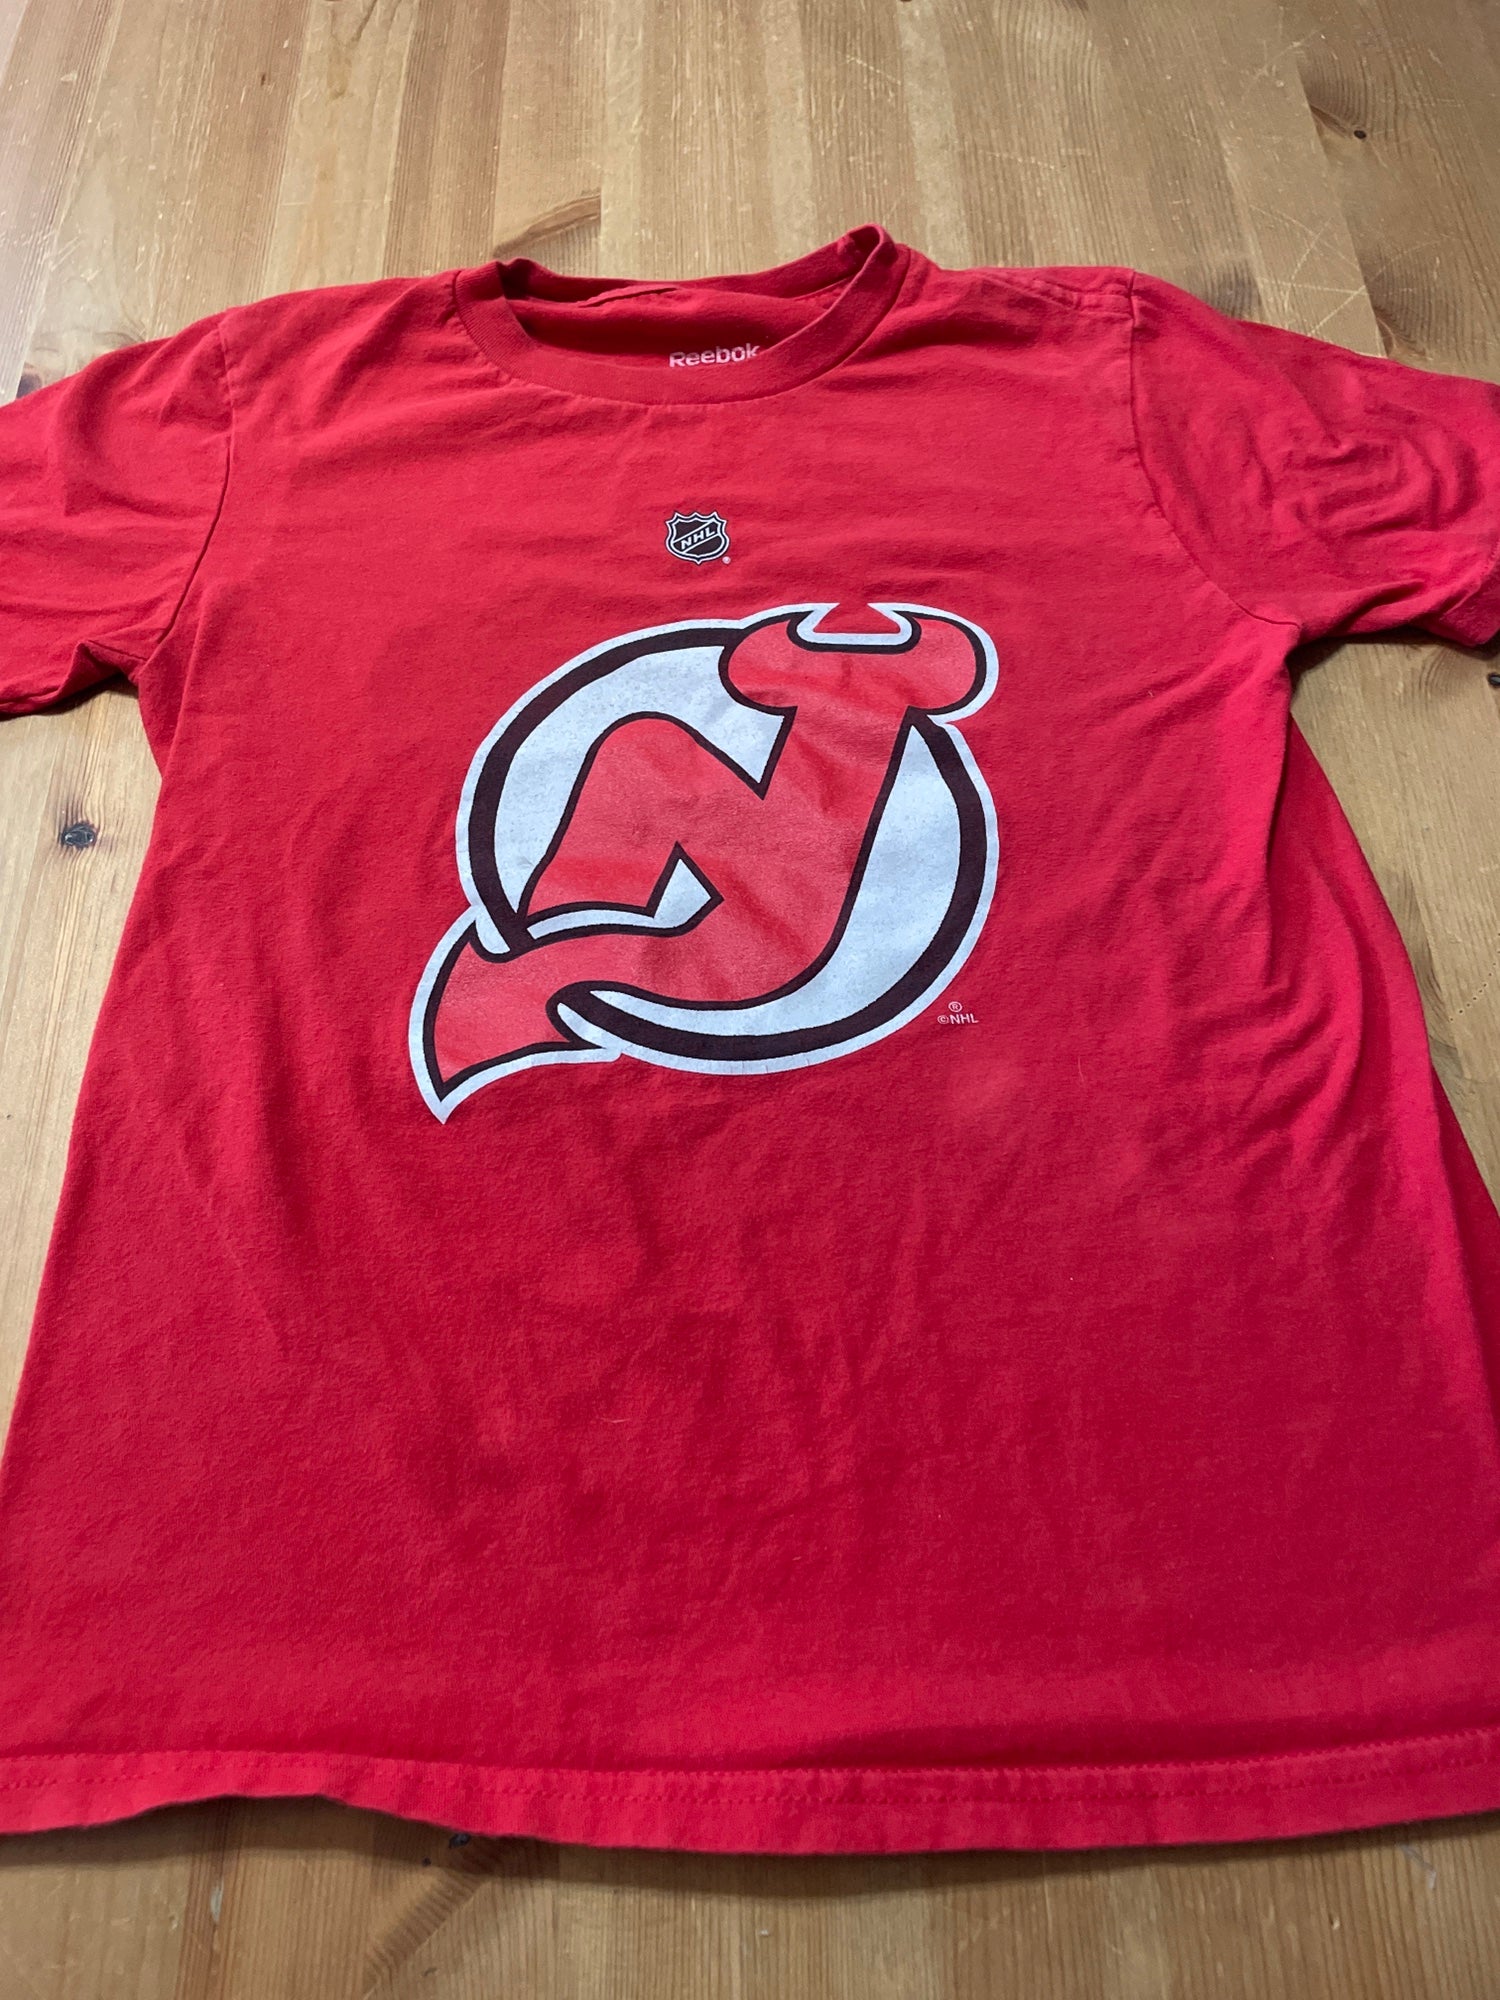 Tops, New Jersey Devils Hockey Shirt Retro 9s New Jersey Devils Men Women  Shirt Tee